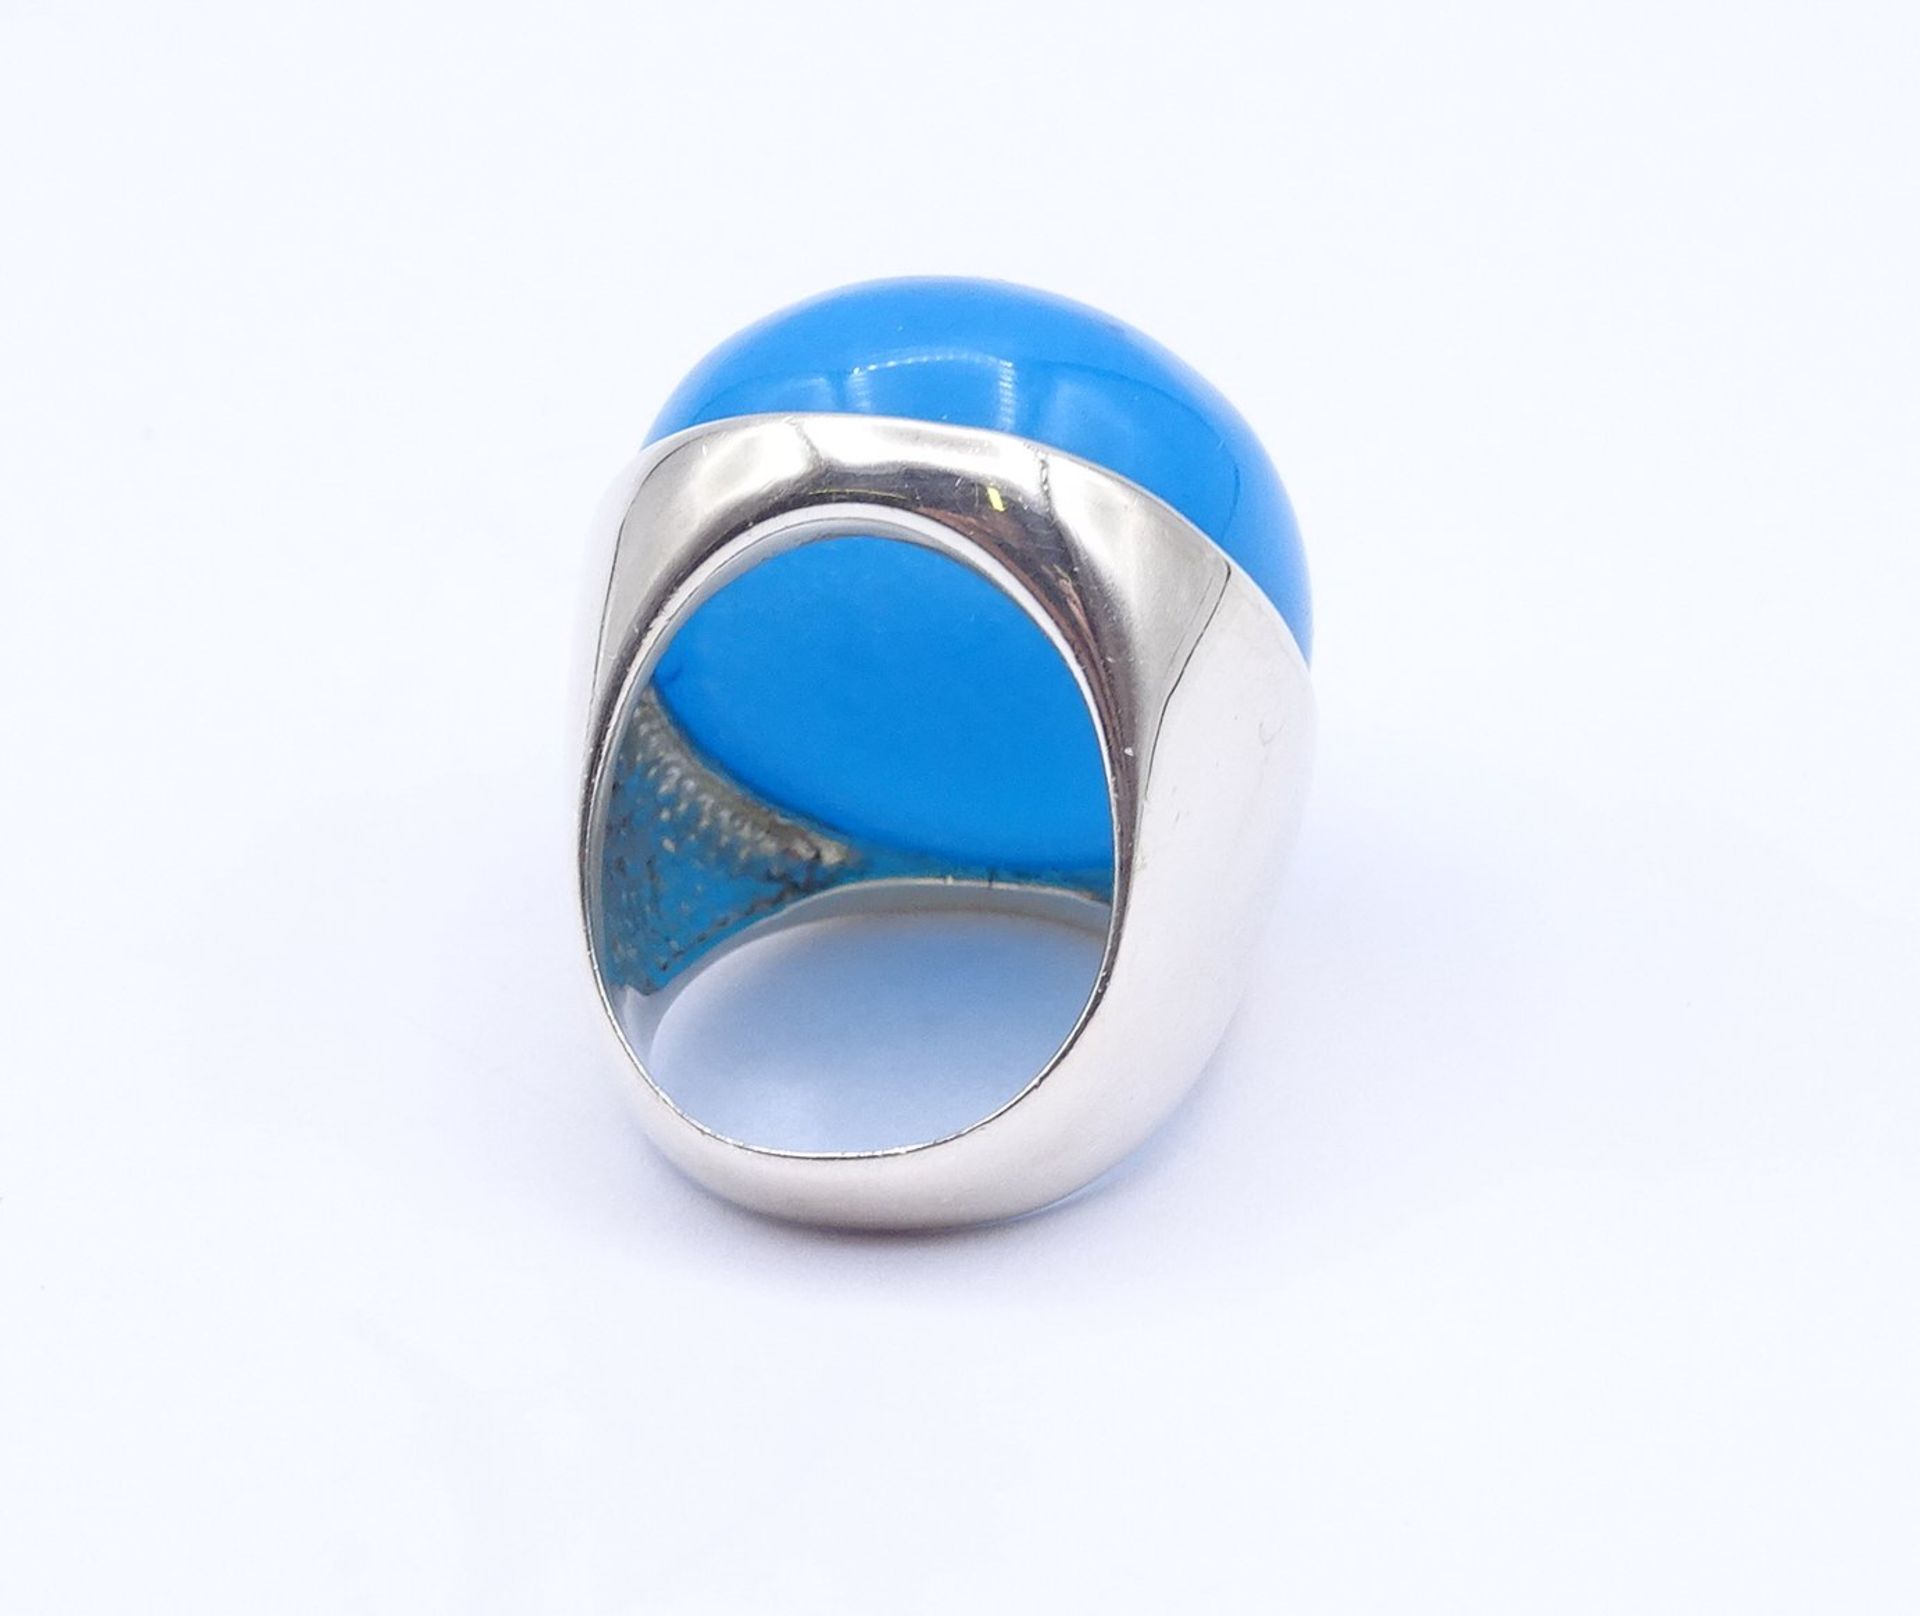 Silber Ring mit einem großen blauen Cabochon, 26g., RG 56, 29x24mm - Image 3 of 3